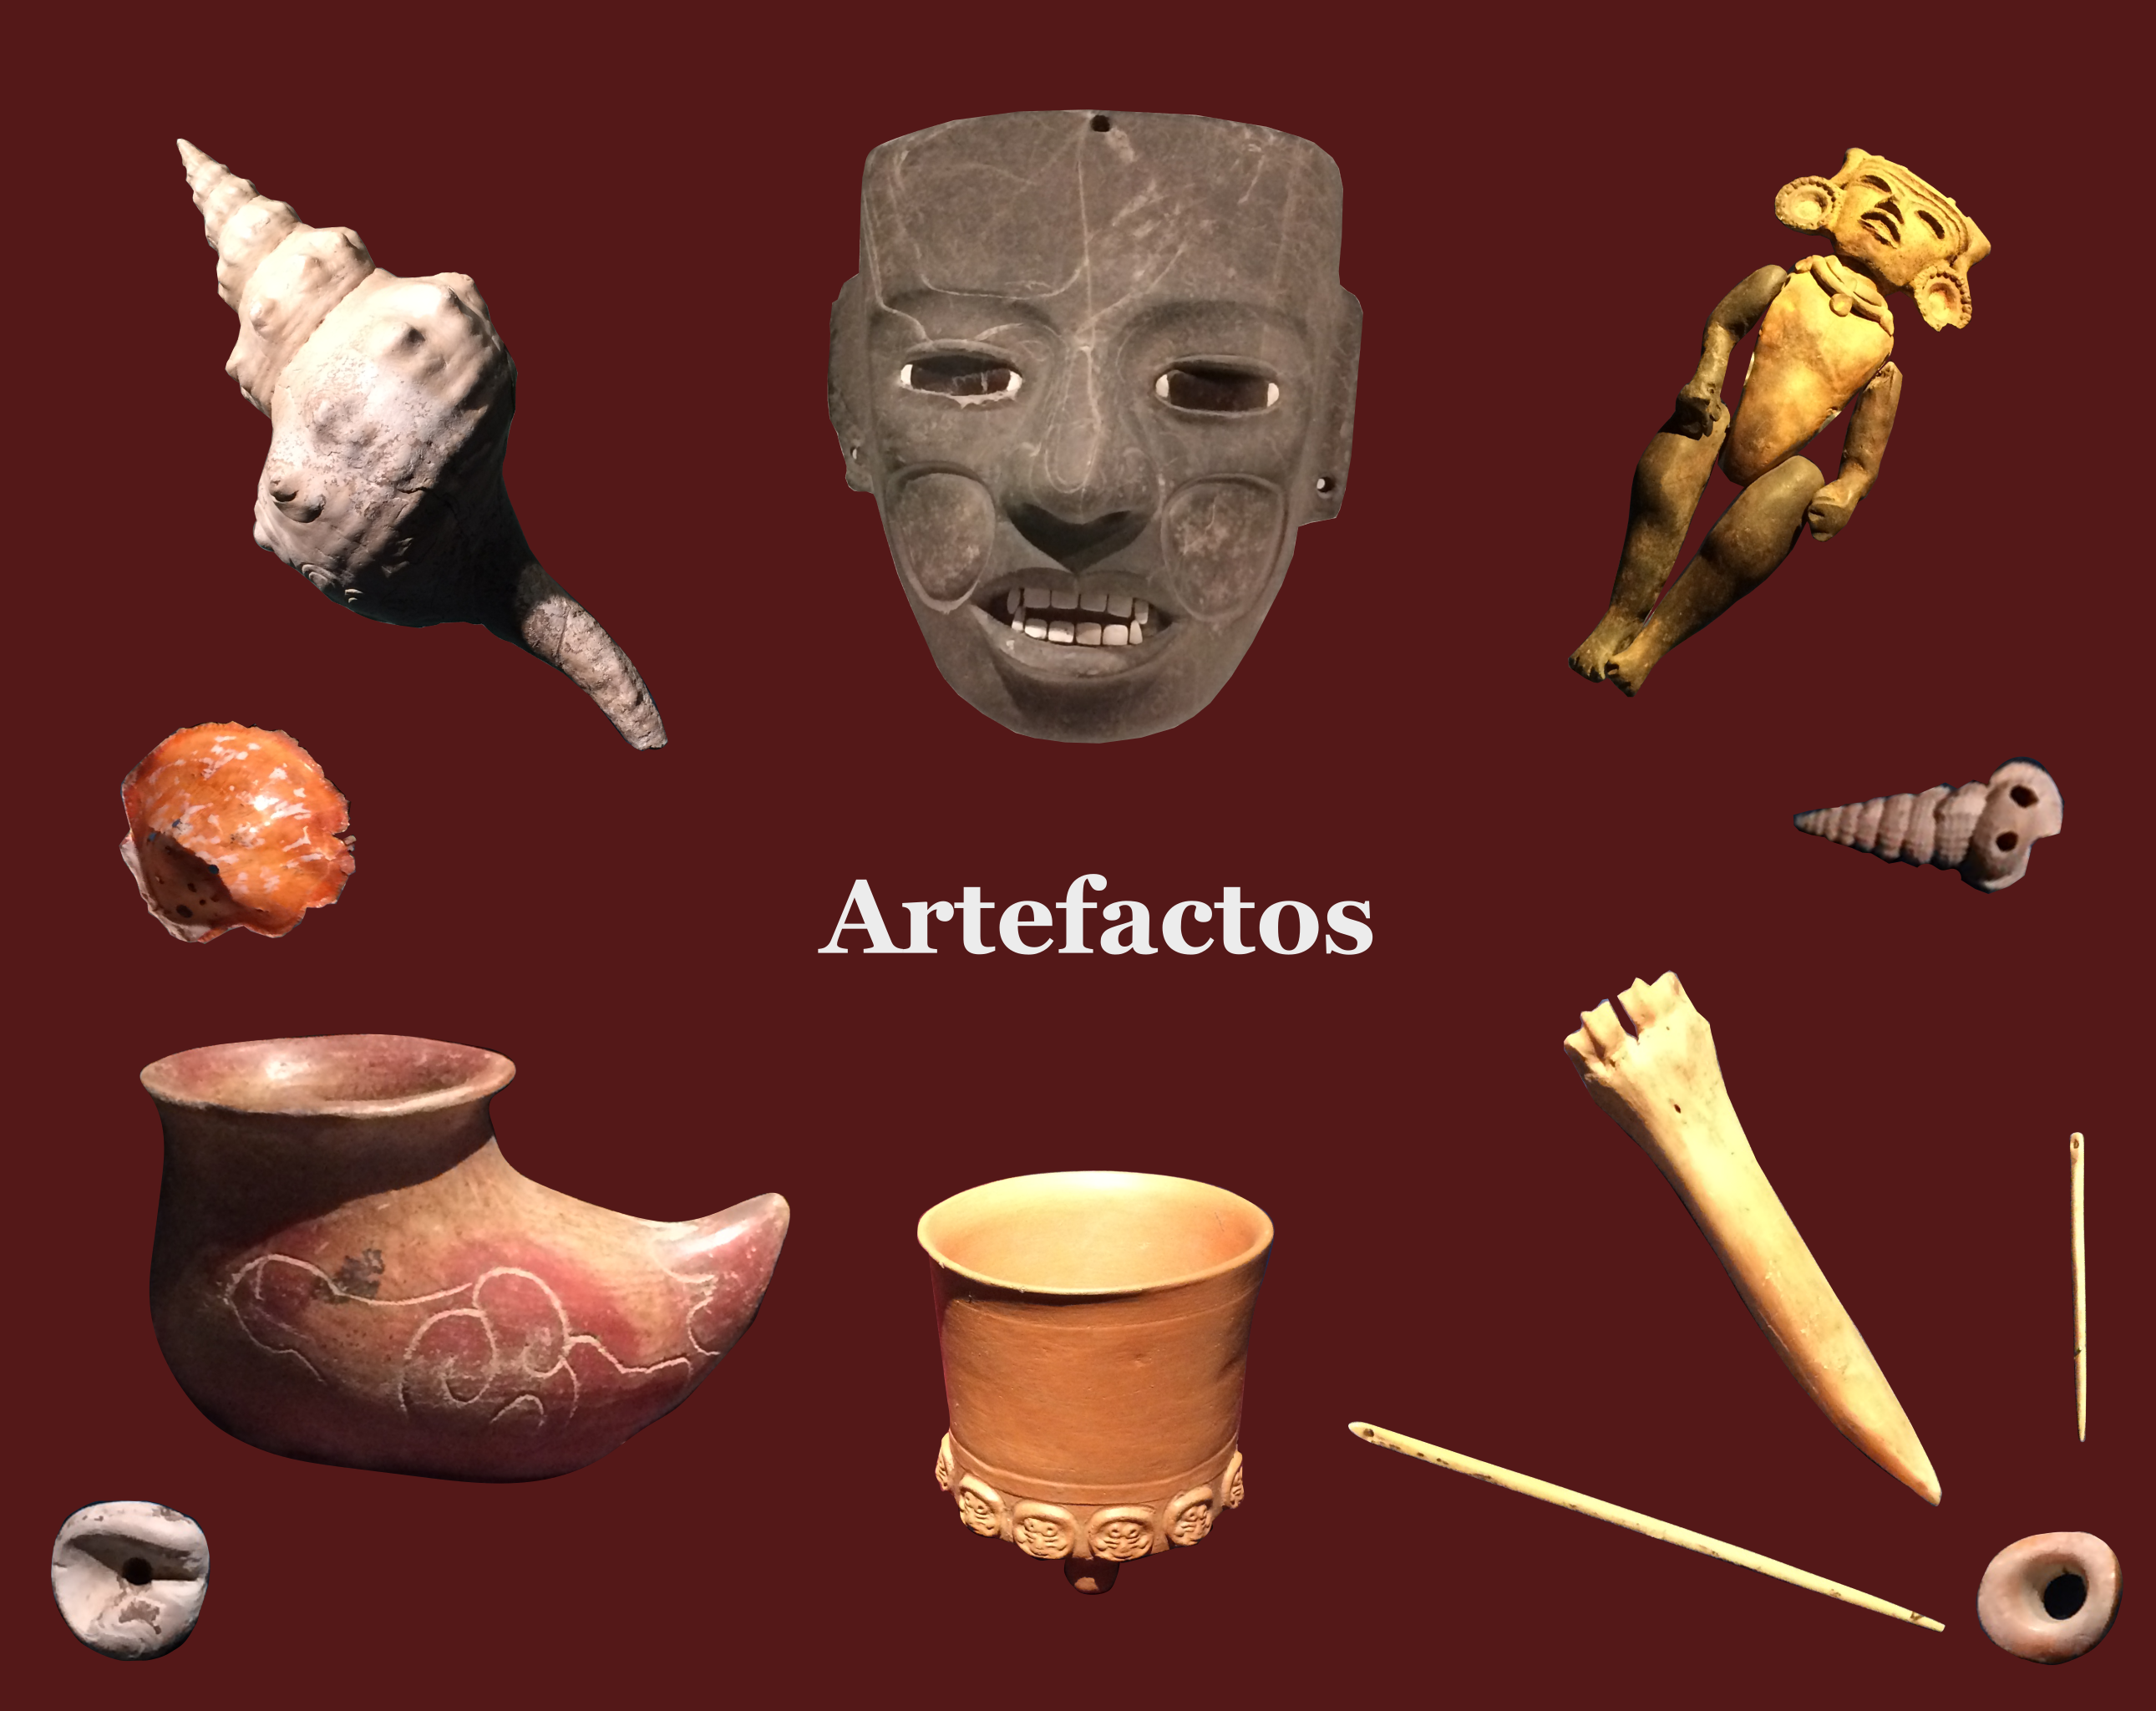 Artefactos y restos humanos